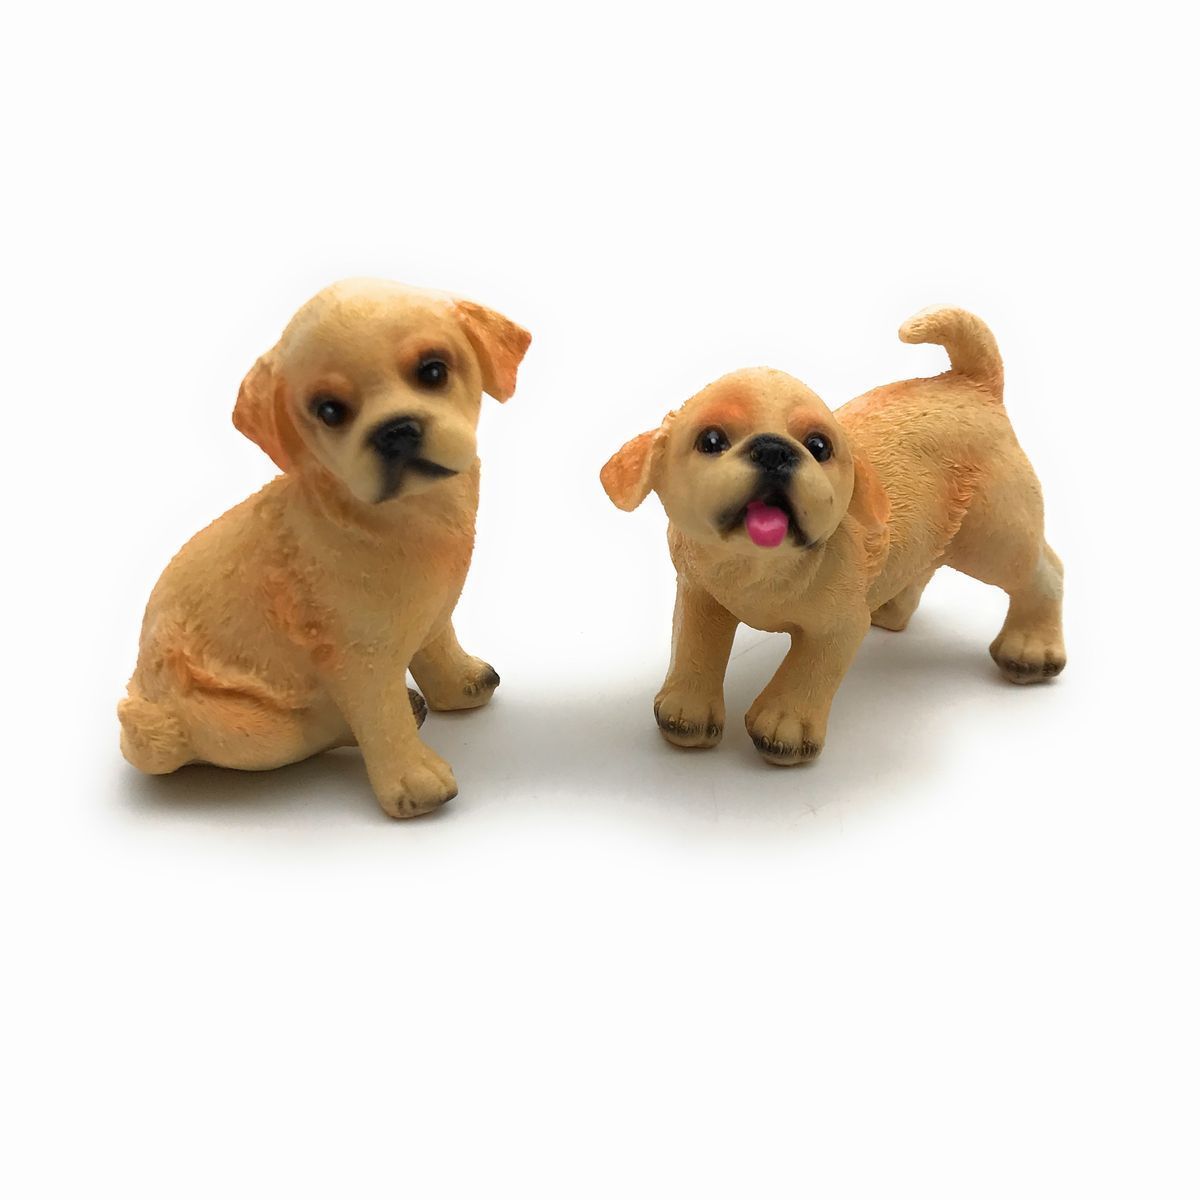 逼真的狗狗雕像 - 2 只小狗套装(金毛猎犬), 手工制品, 内部的, 杂货, 装饰品, 目的